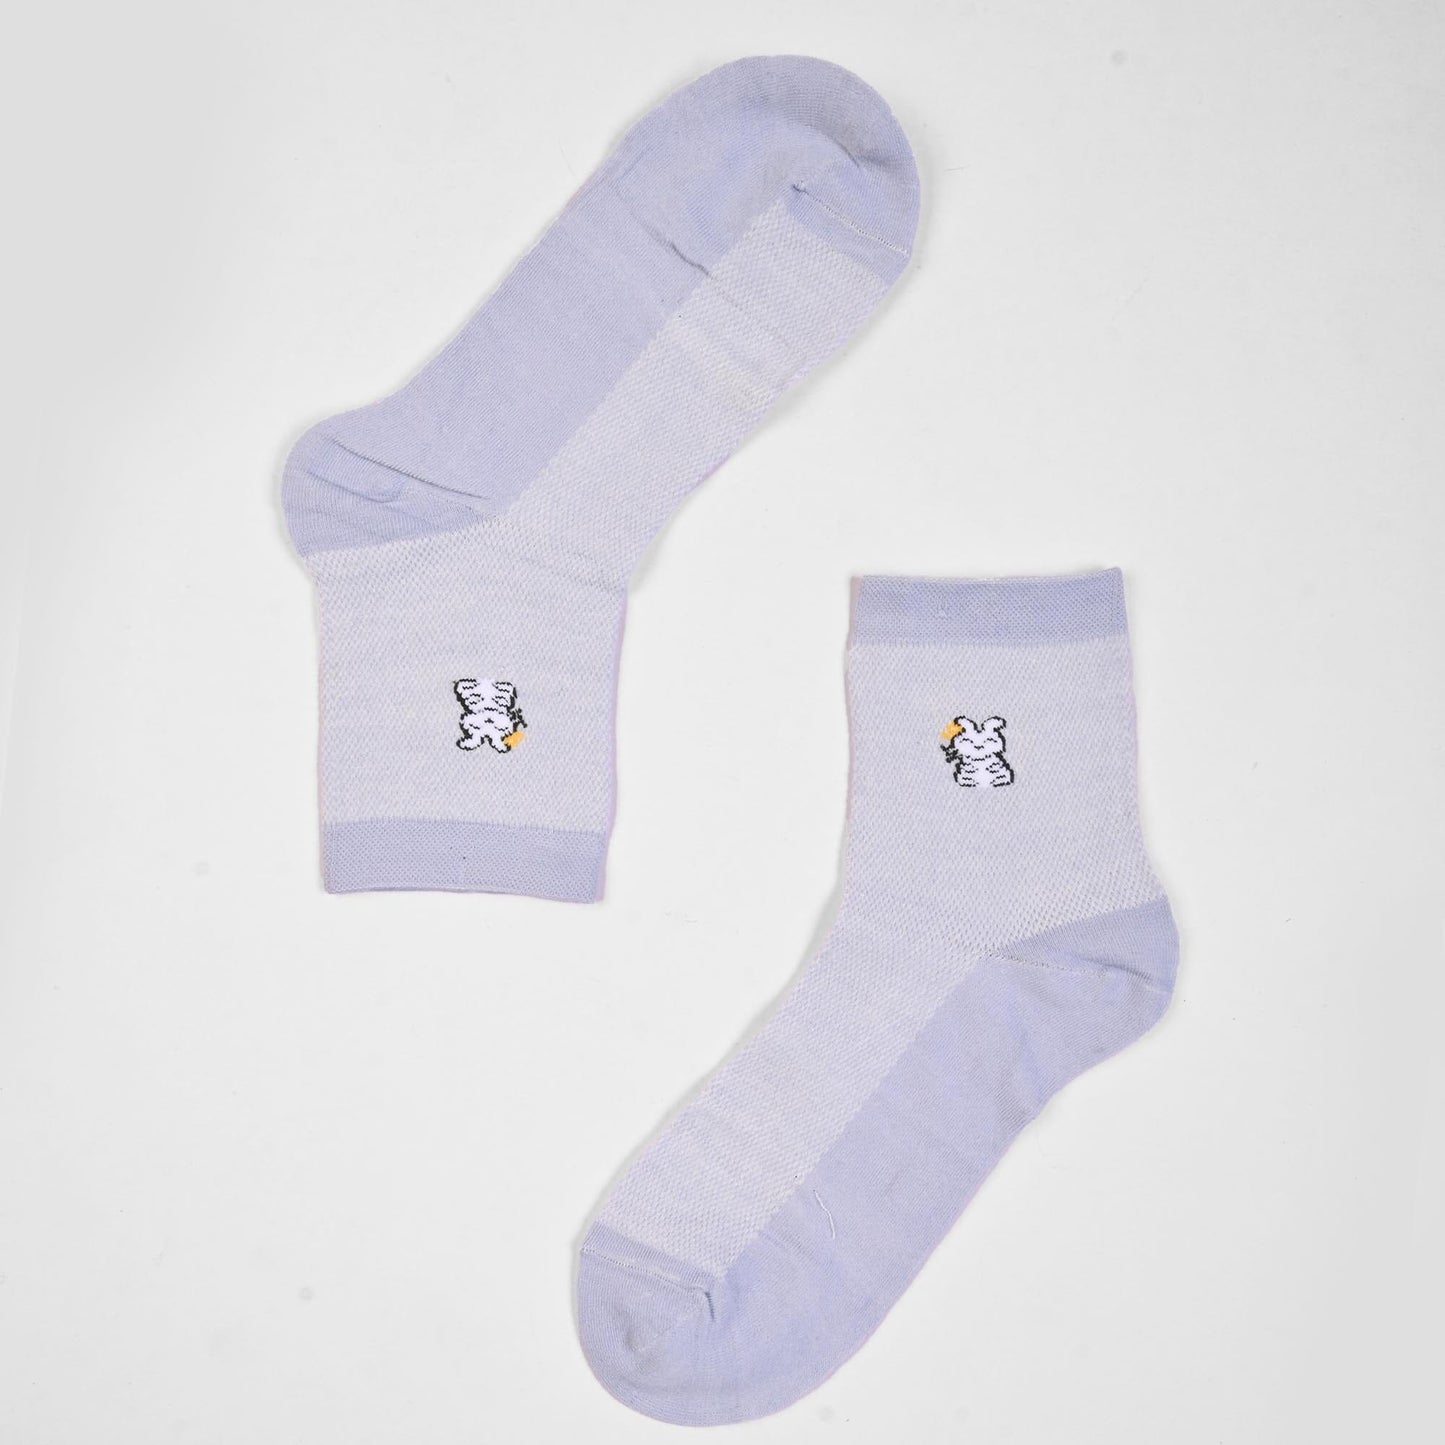 Vienna Women's Graz Anklet Socks Socks SRL Powder Blue D5 EUR 35-40